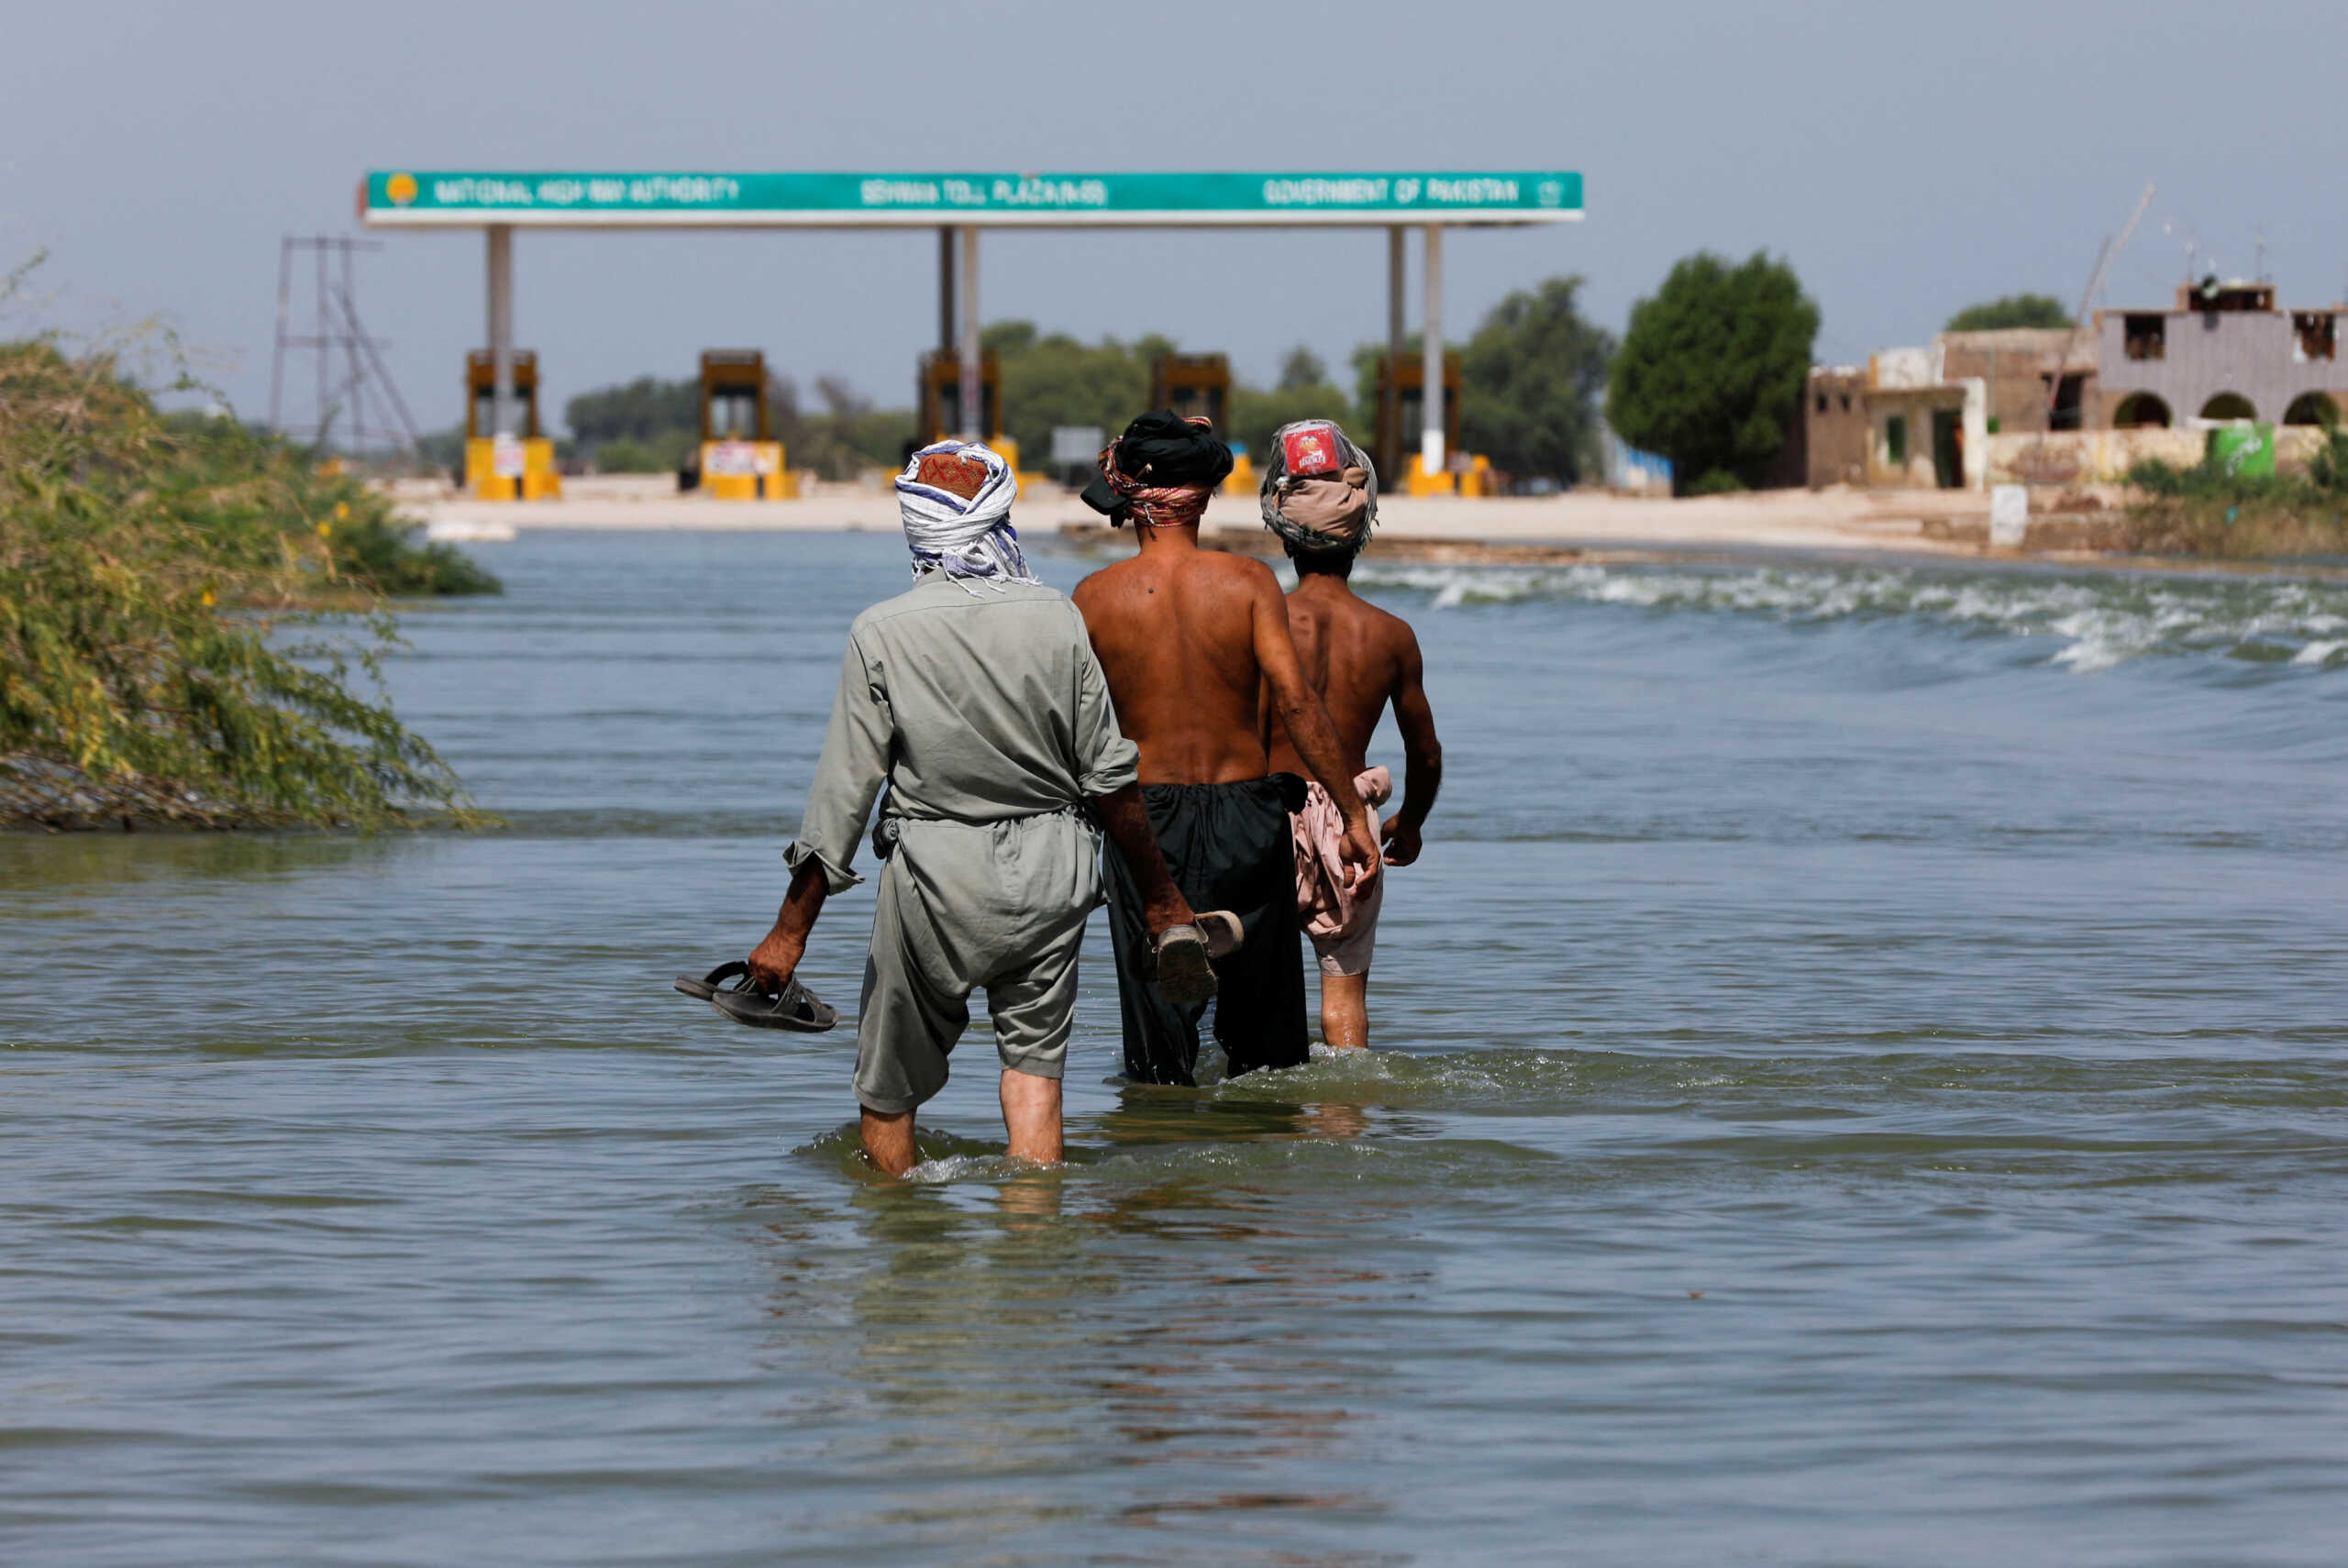 Πακιστάν: Τα στάσιμα νερά έχουν προκαλέσει σοβαρά προβλήματα υγείας στους πλημμυροπαθείς